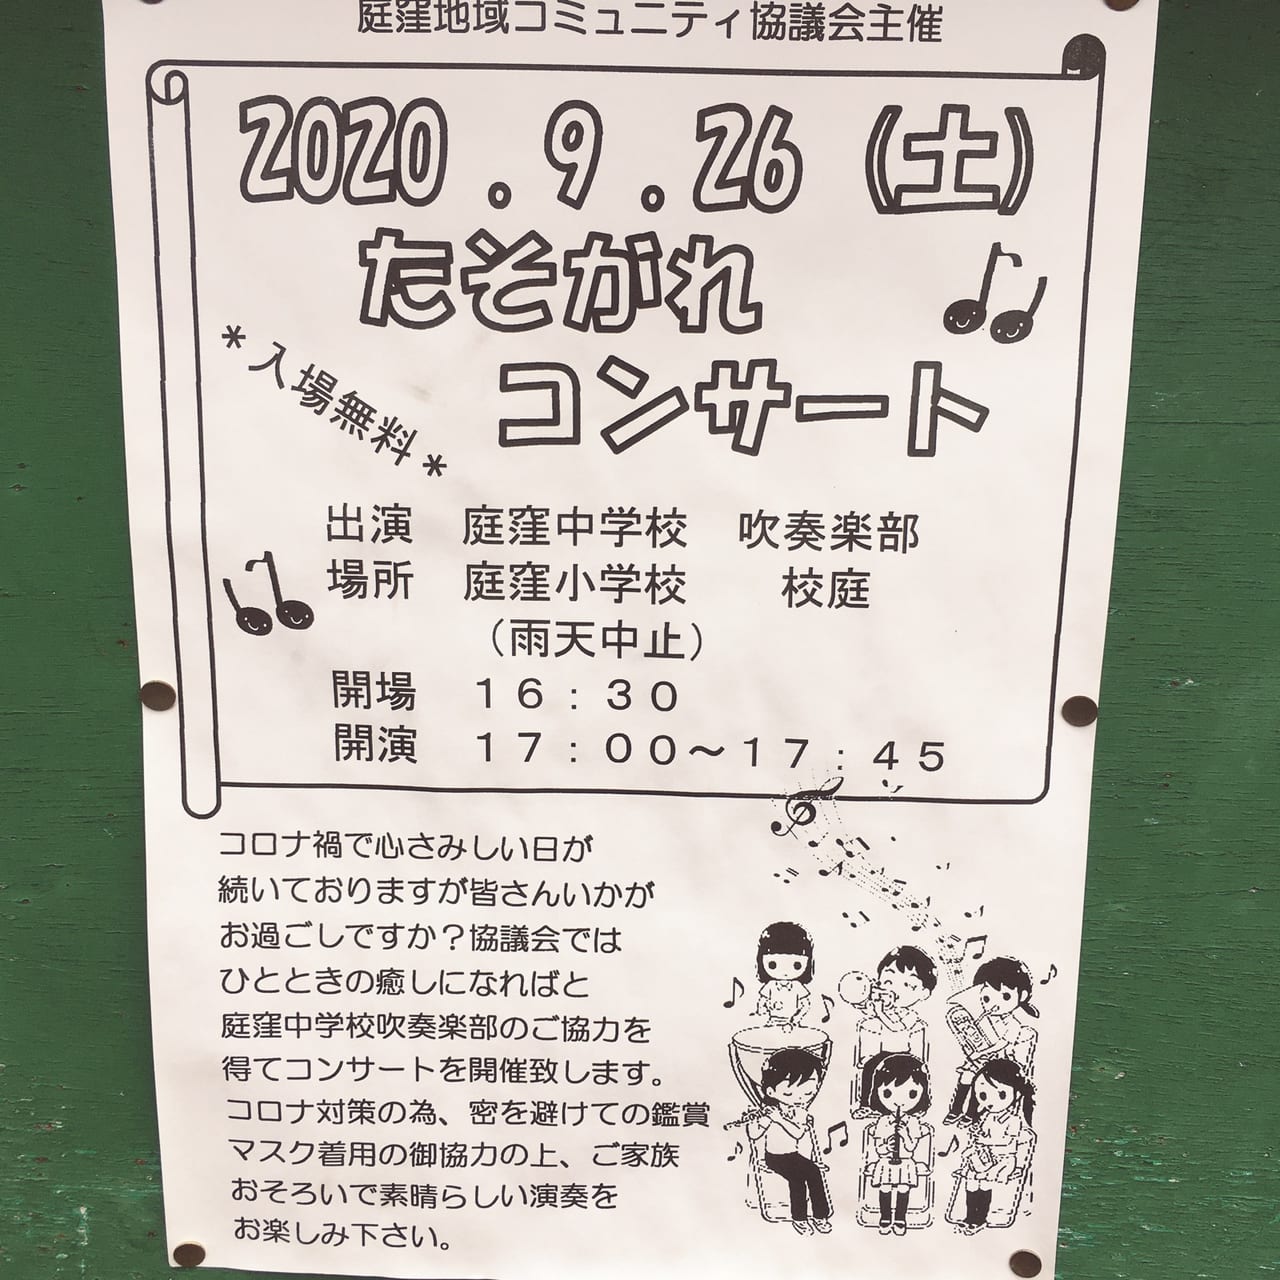 守口市 入場無料 庭窪中学校吹奏楽部による たそがれコンサート が９月２６日に開催されます 号外net 守口 門真